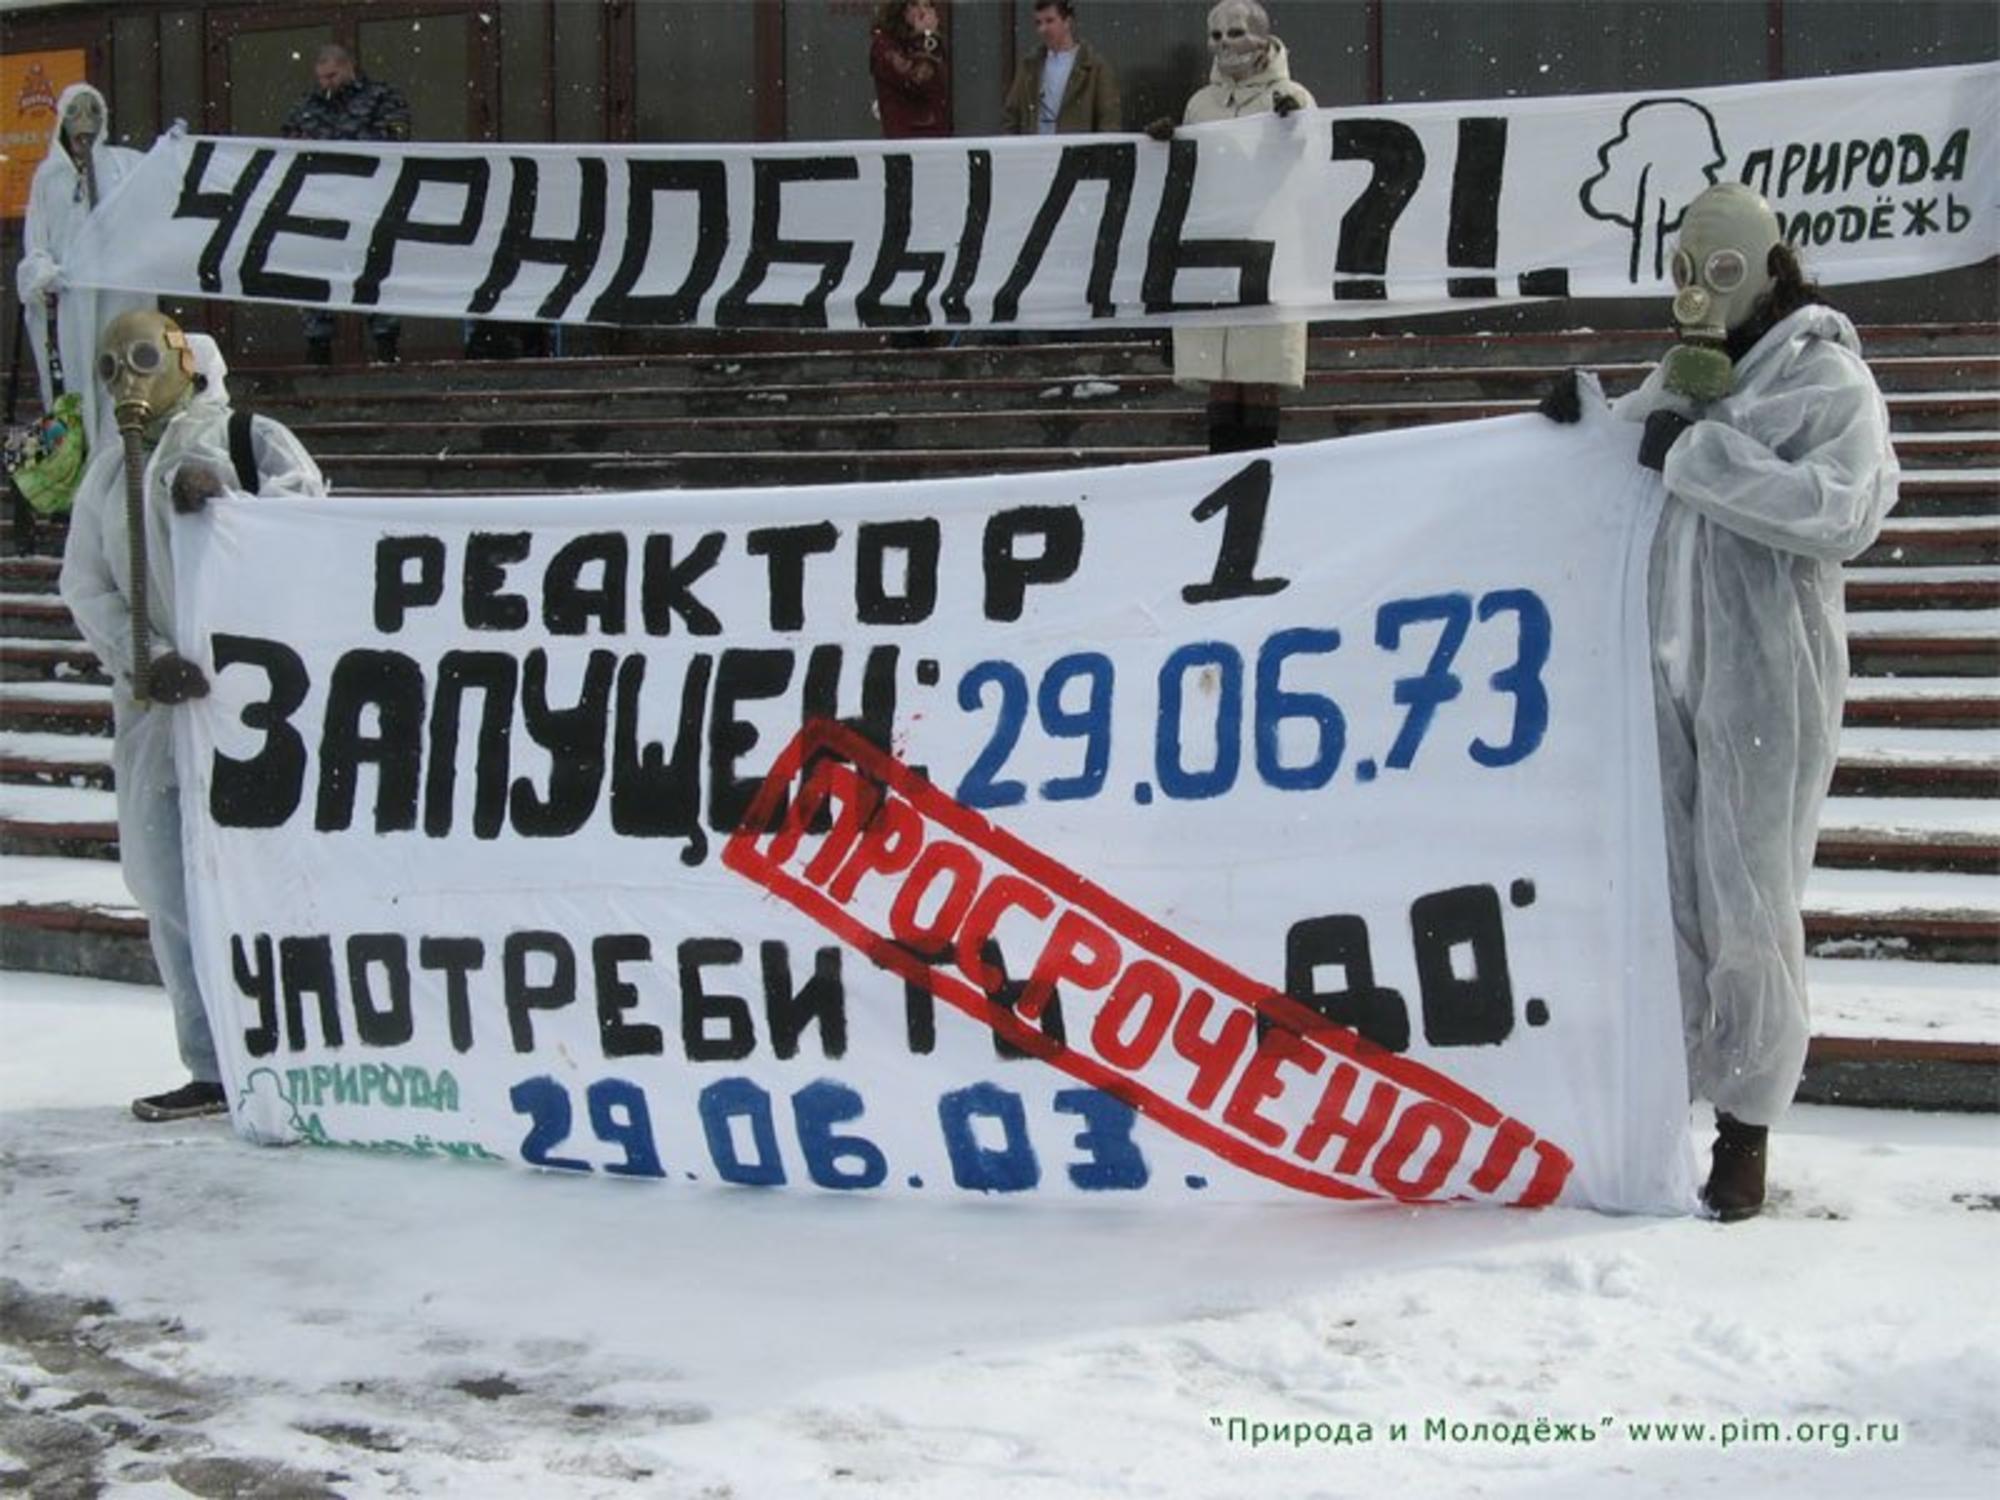 Protesta contra la central nuclear de Kola, en Rusia. Fuente: Beyond Nuclear International